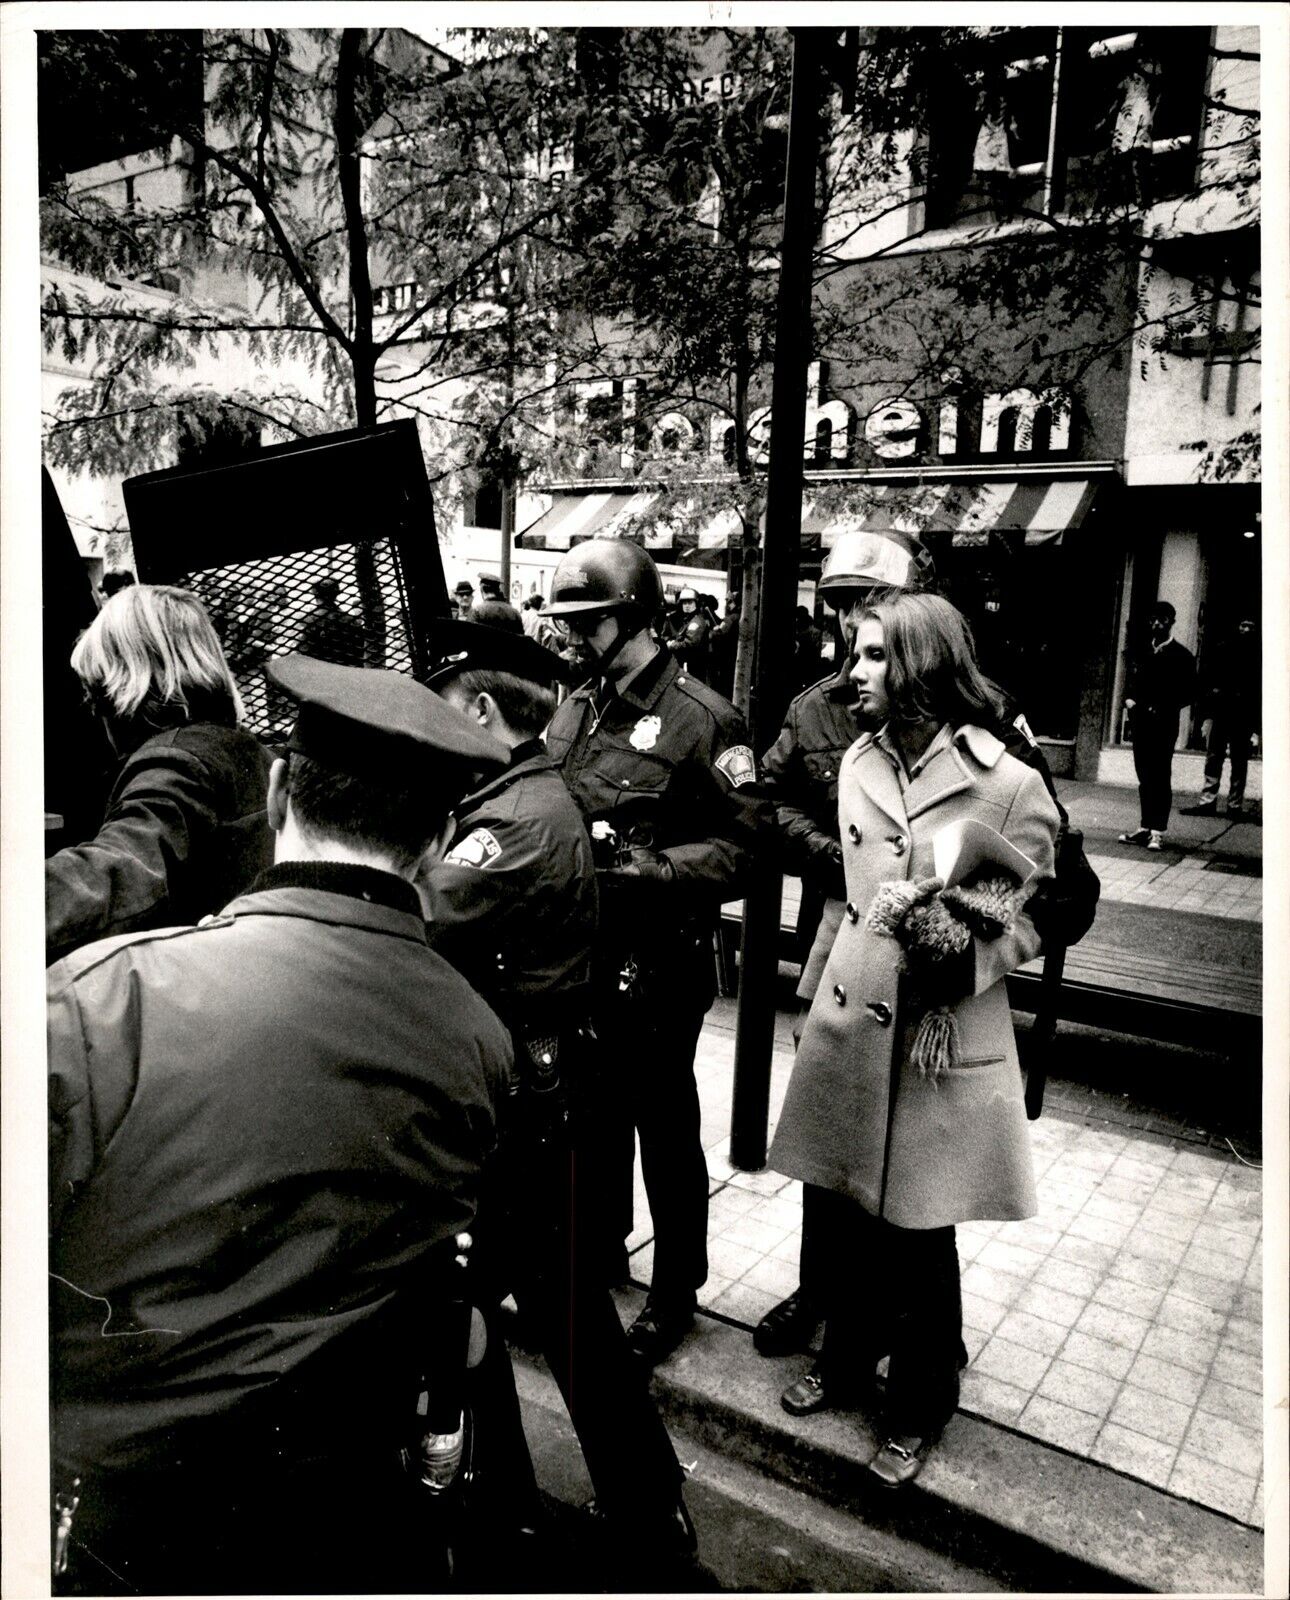 LG927 1969 Original Duane Braley Photo VIETNAM MORATORIUM Antiwar Protesters